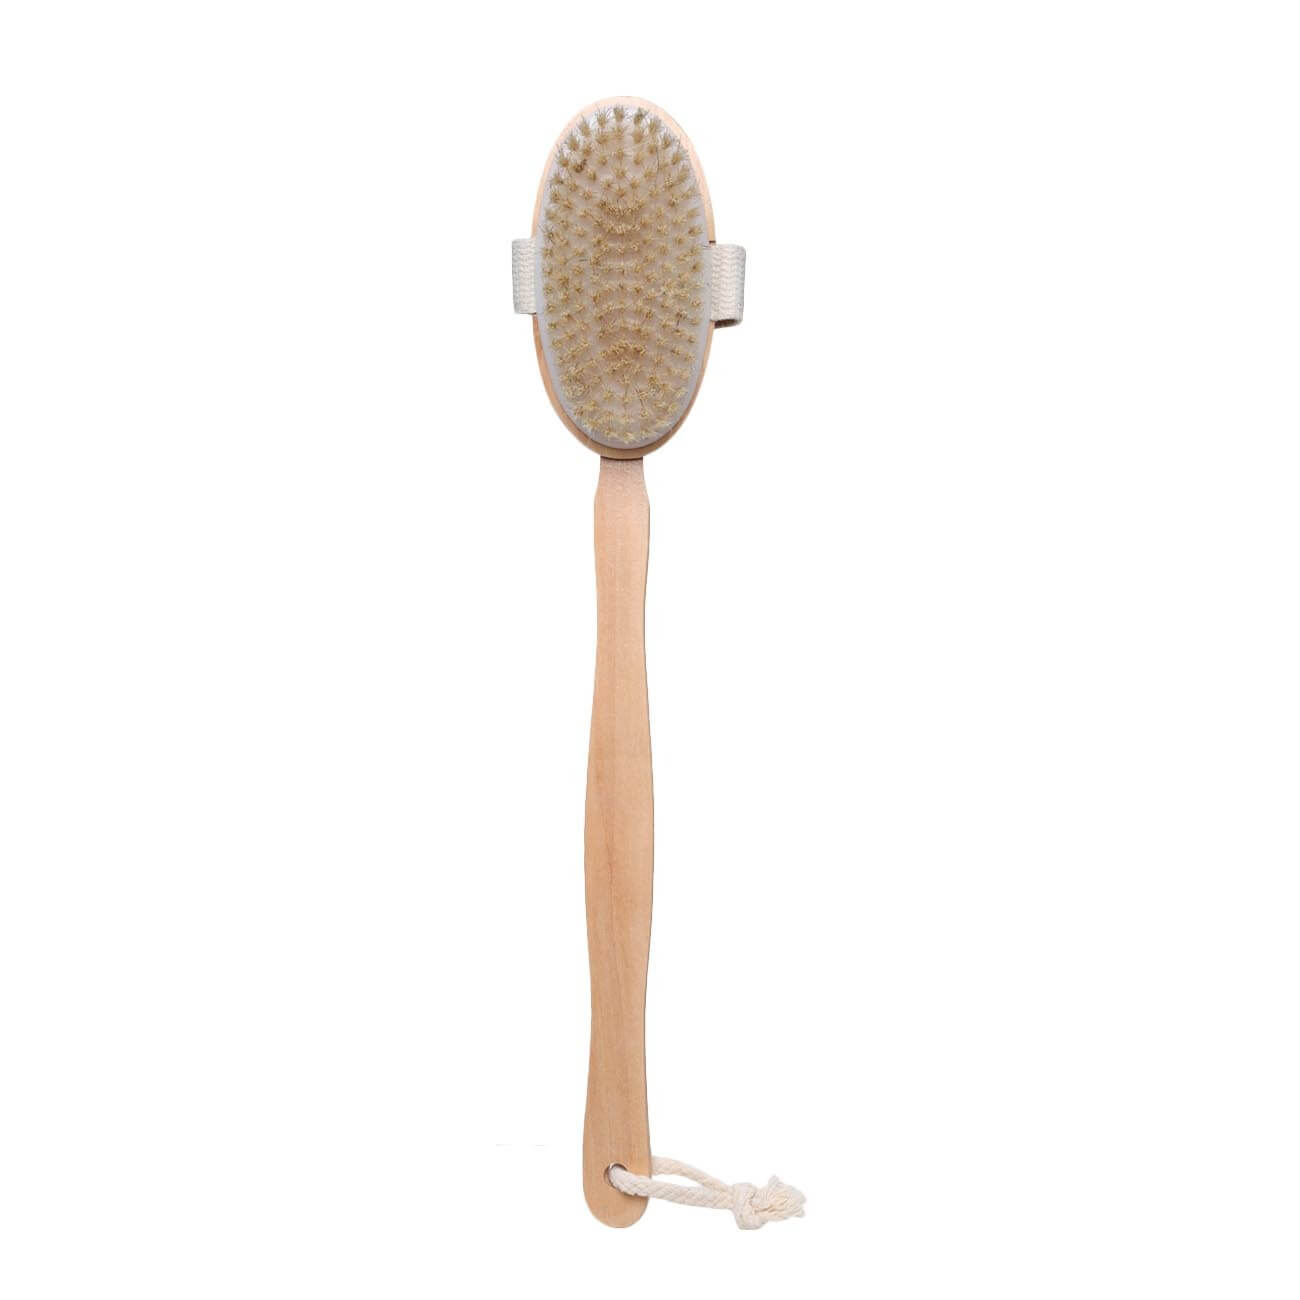 Щетка для сухого массажа, 40 см, с держателем, дерево/нейлон, Bamboo spa щетка для сухого массажа 30 см двусторонняя бамбук сизаль bamboo spa